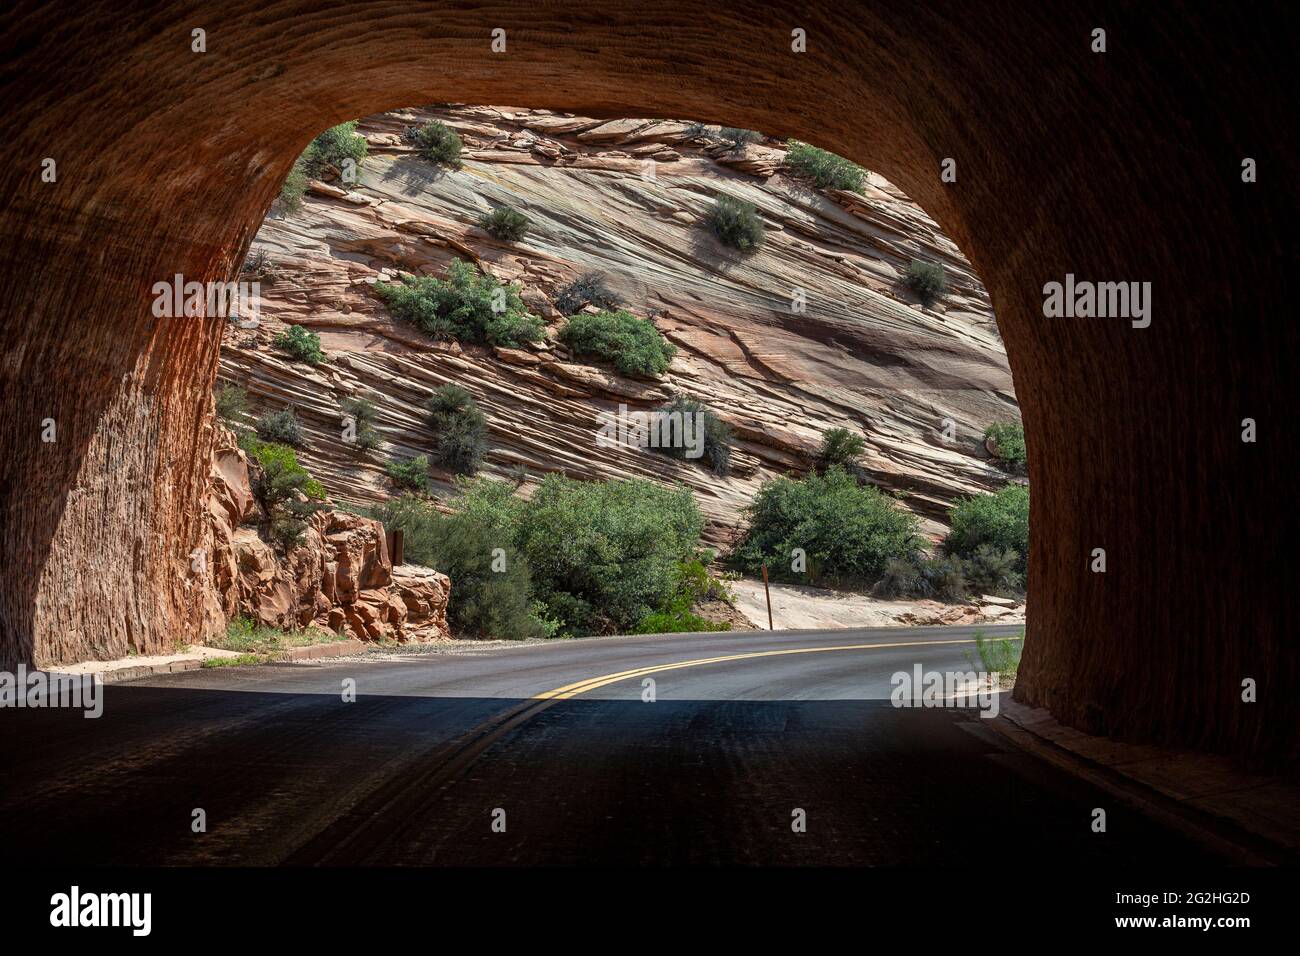 Autopista Mount Carmel - Dentro del túnel Zion Mount Carmel - Parque Nacional Zion, Utah, Estados Unidos Foto de stock